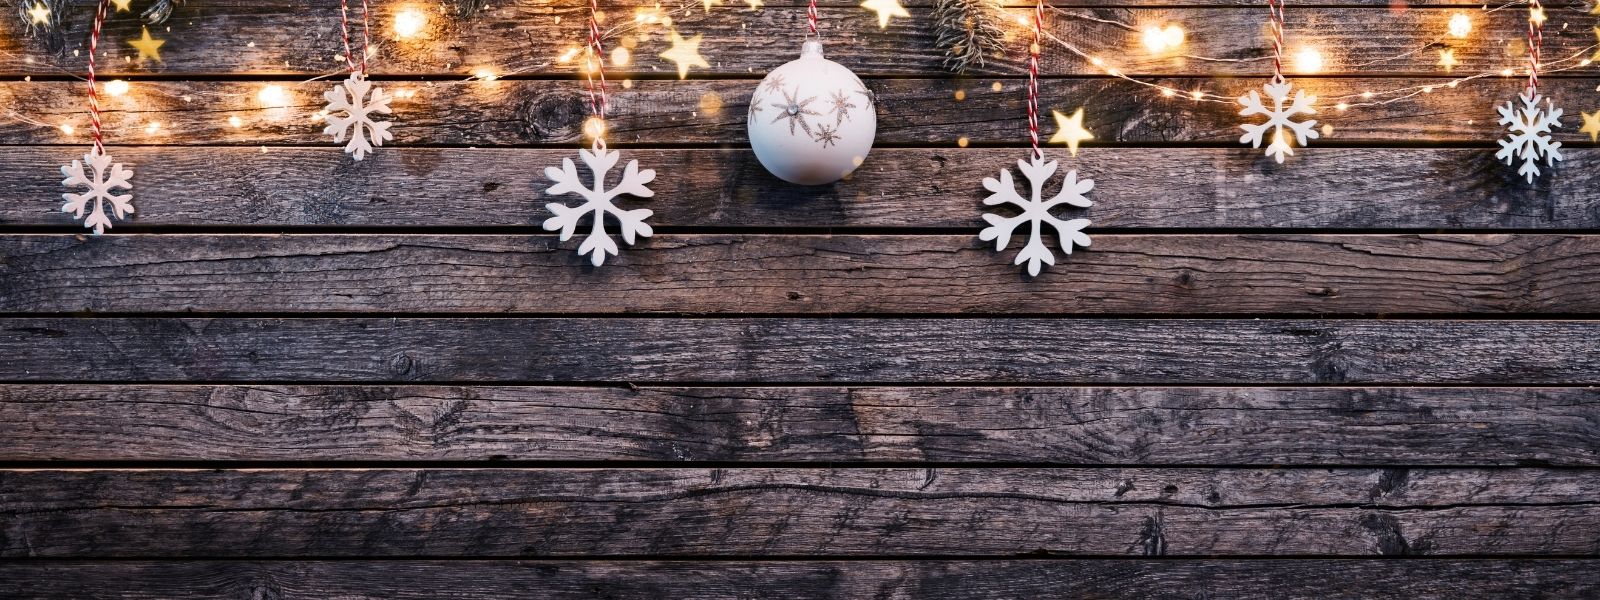 Konsum adé – Tipps für eine stille, achtsame Weihnachtszeit